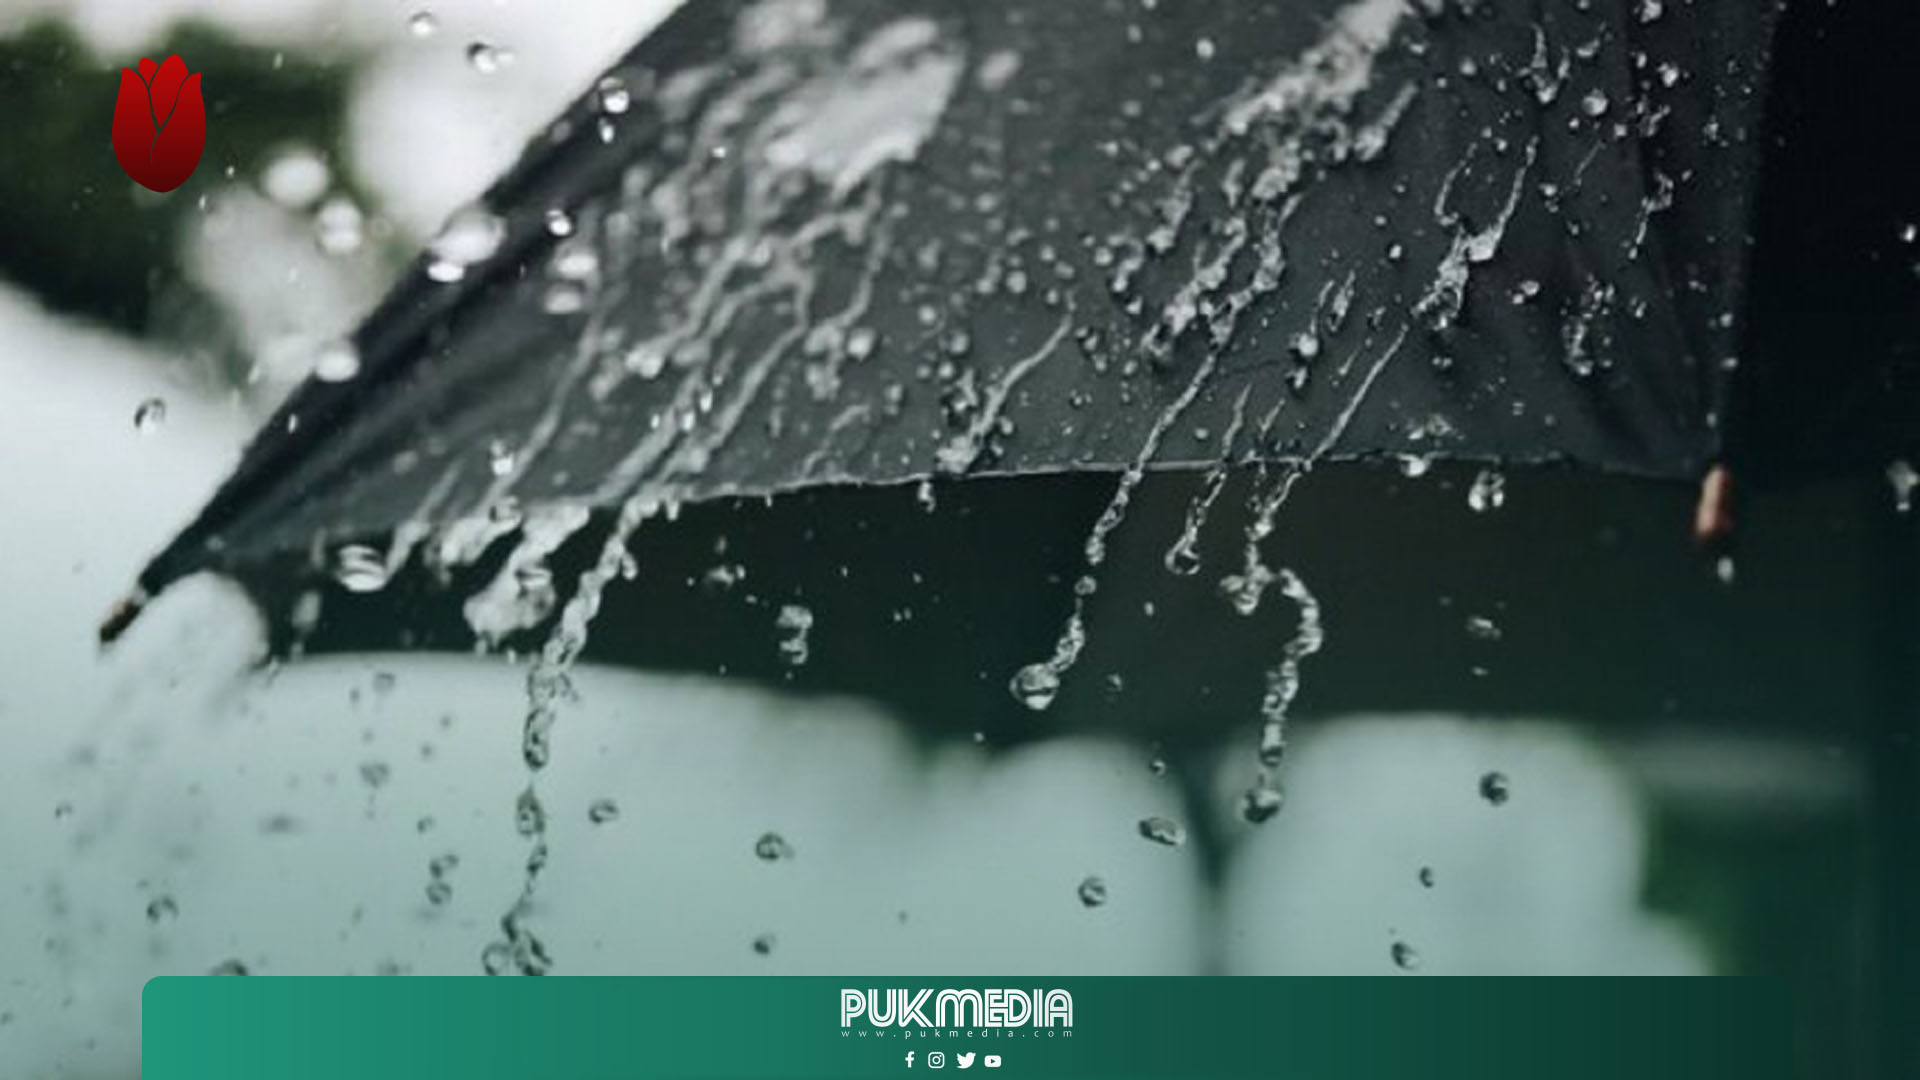 كميات الامطار في اقليم كوردستان خلال 24 ساعة